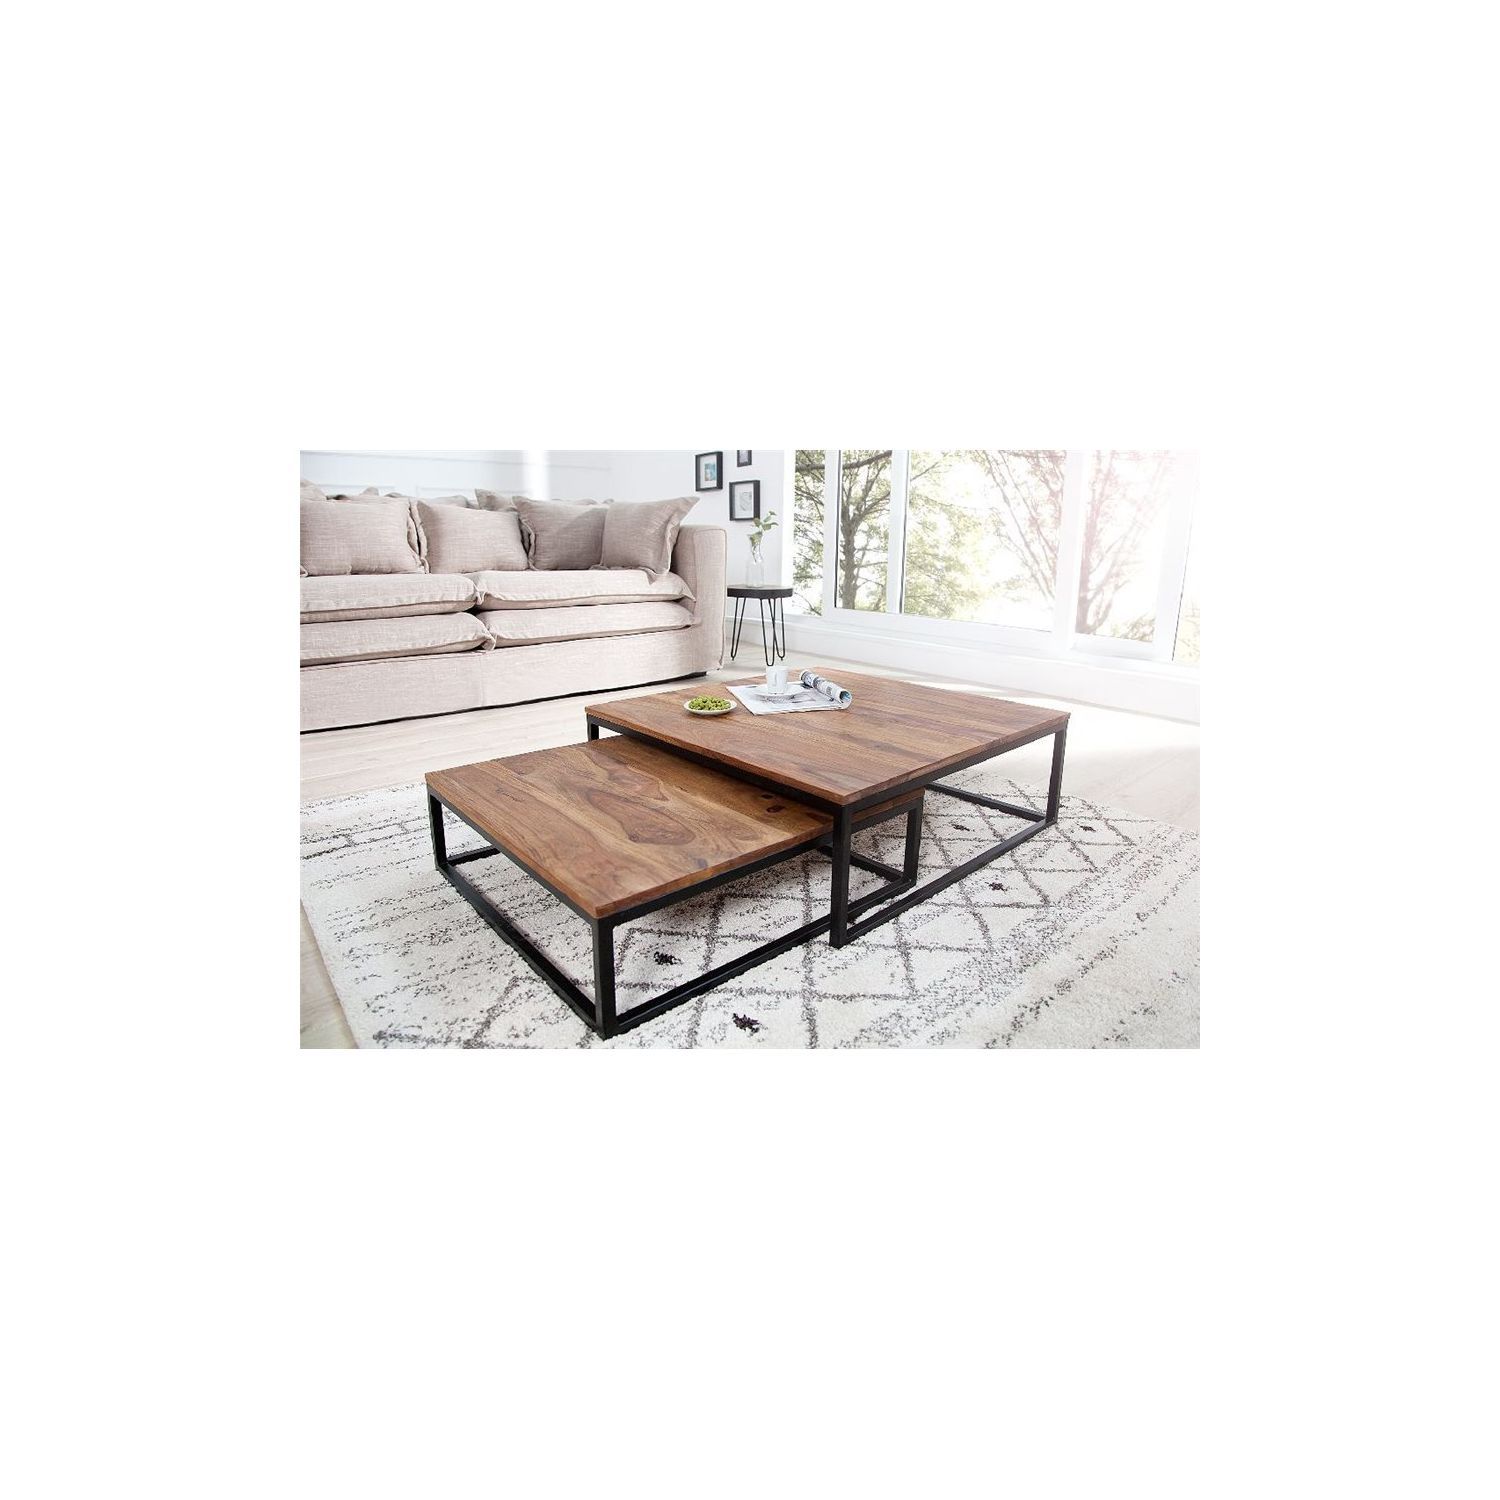 Table basse bois foncé design